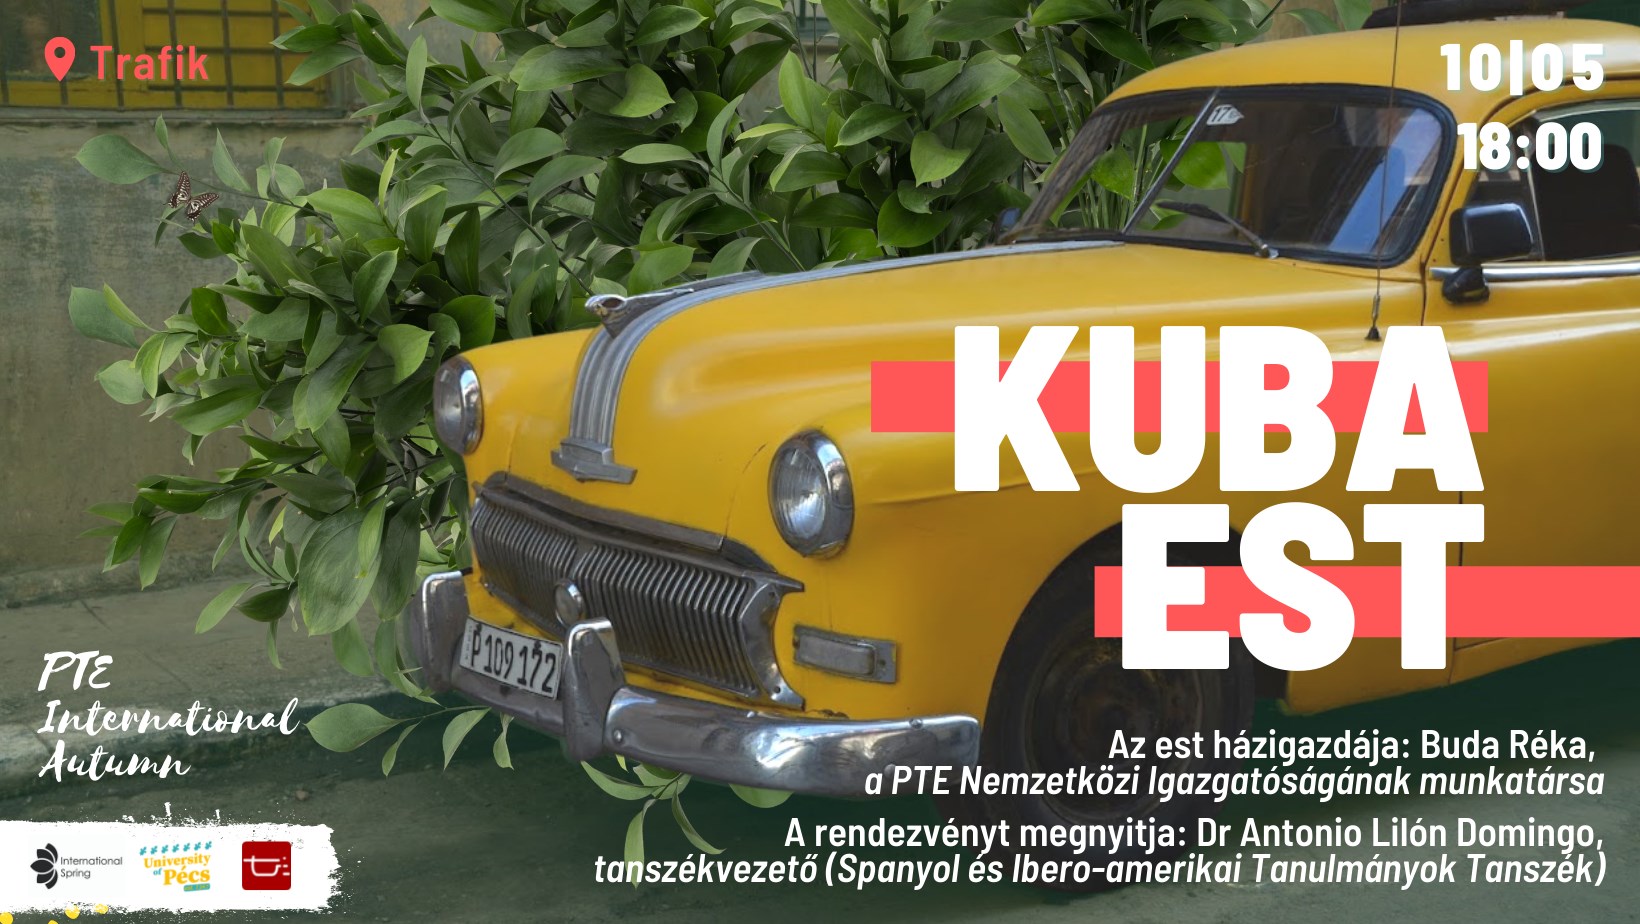 Kuba Est